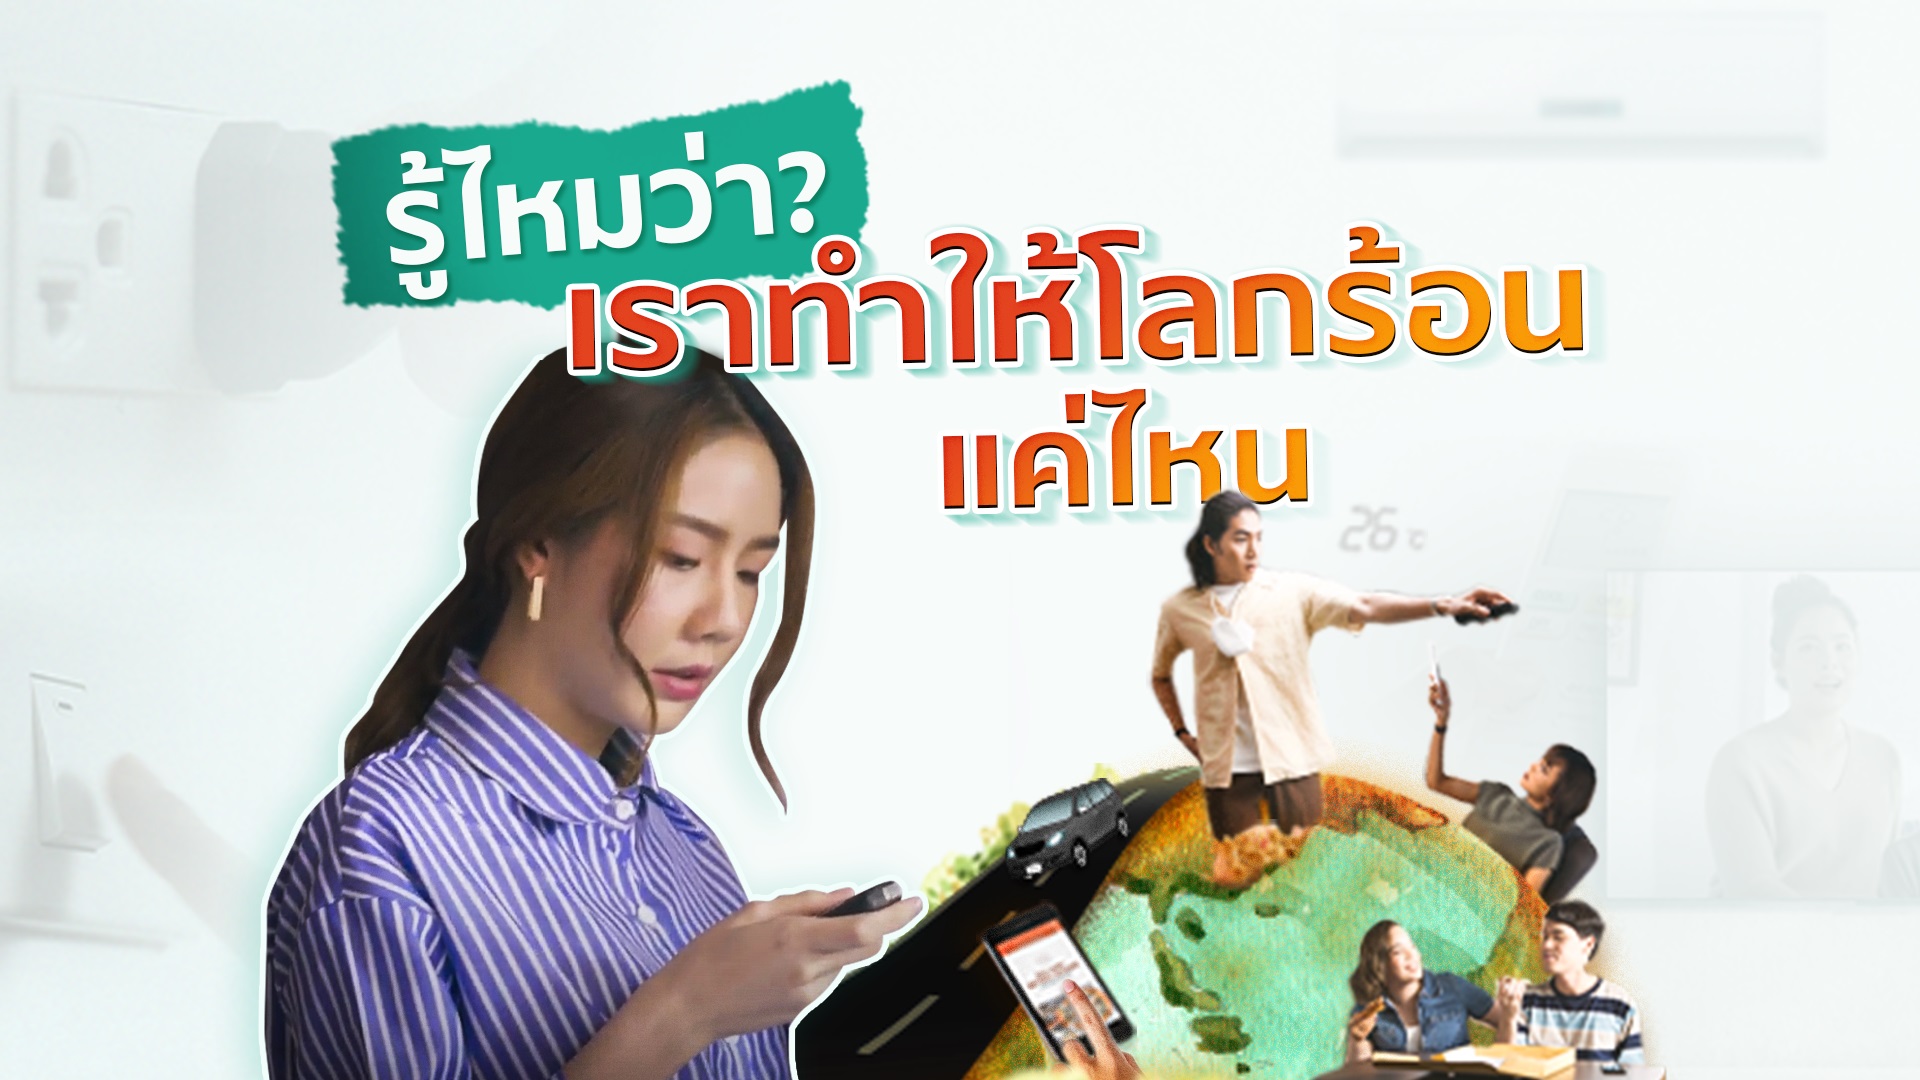 เอสซีจี ชวนคนไทยปรับไลฟ์สไตล์ช่วยลดโลกร้อน ผ่านภาพยนตร์โฆษณาออนไลน์ ชุด “ลดโลกร้อน เริ่มที่เรา”